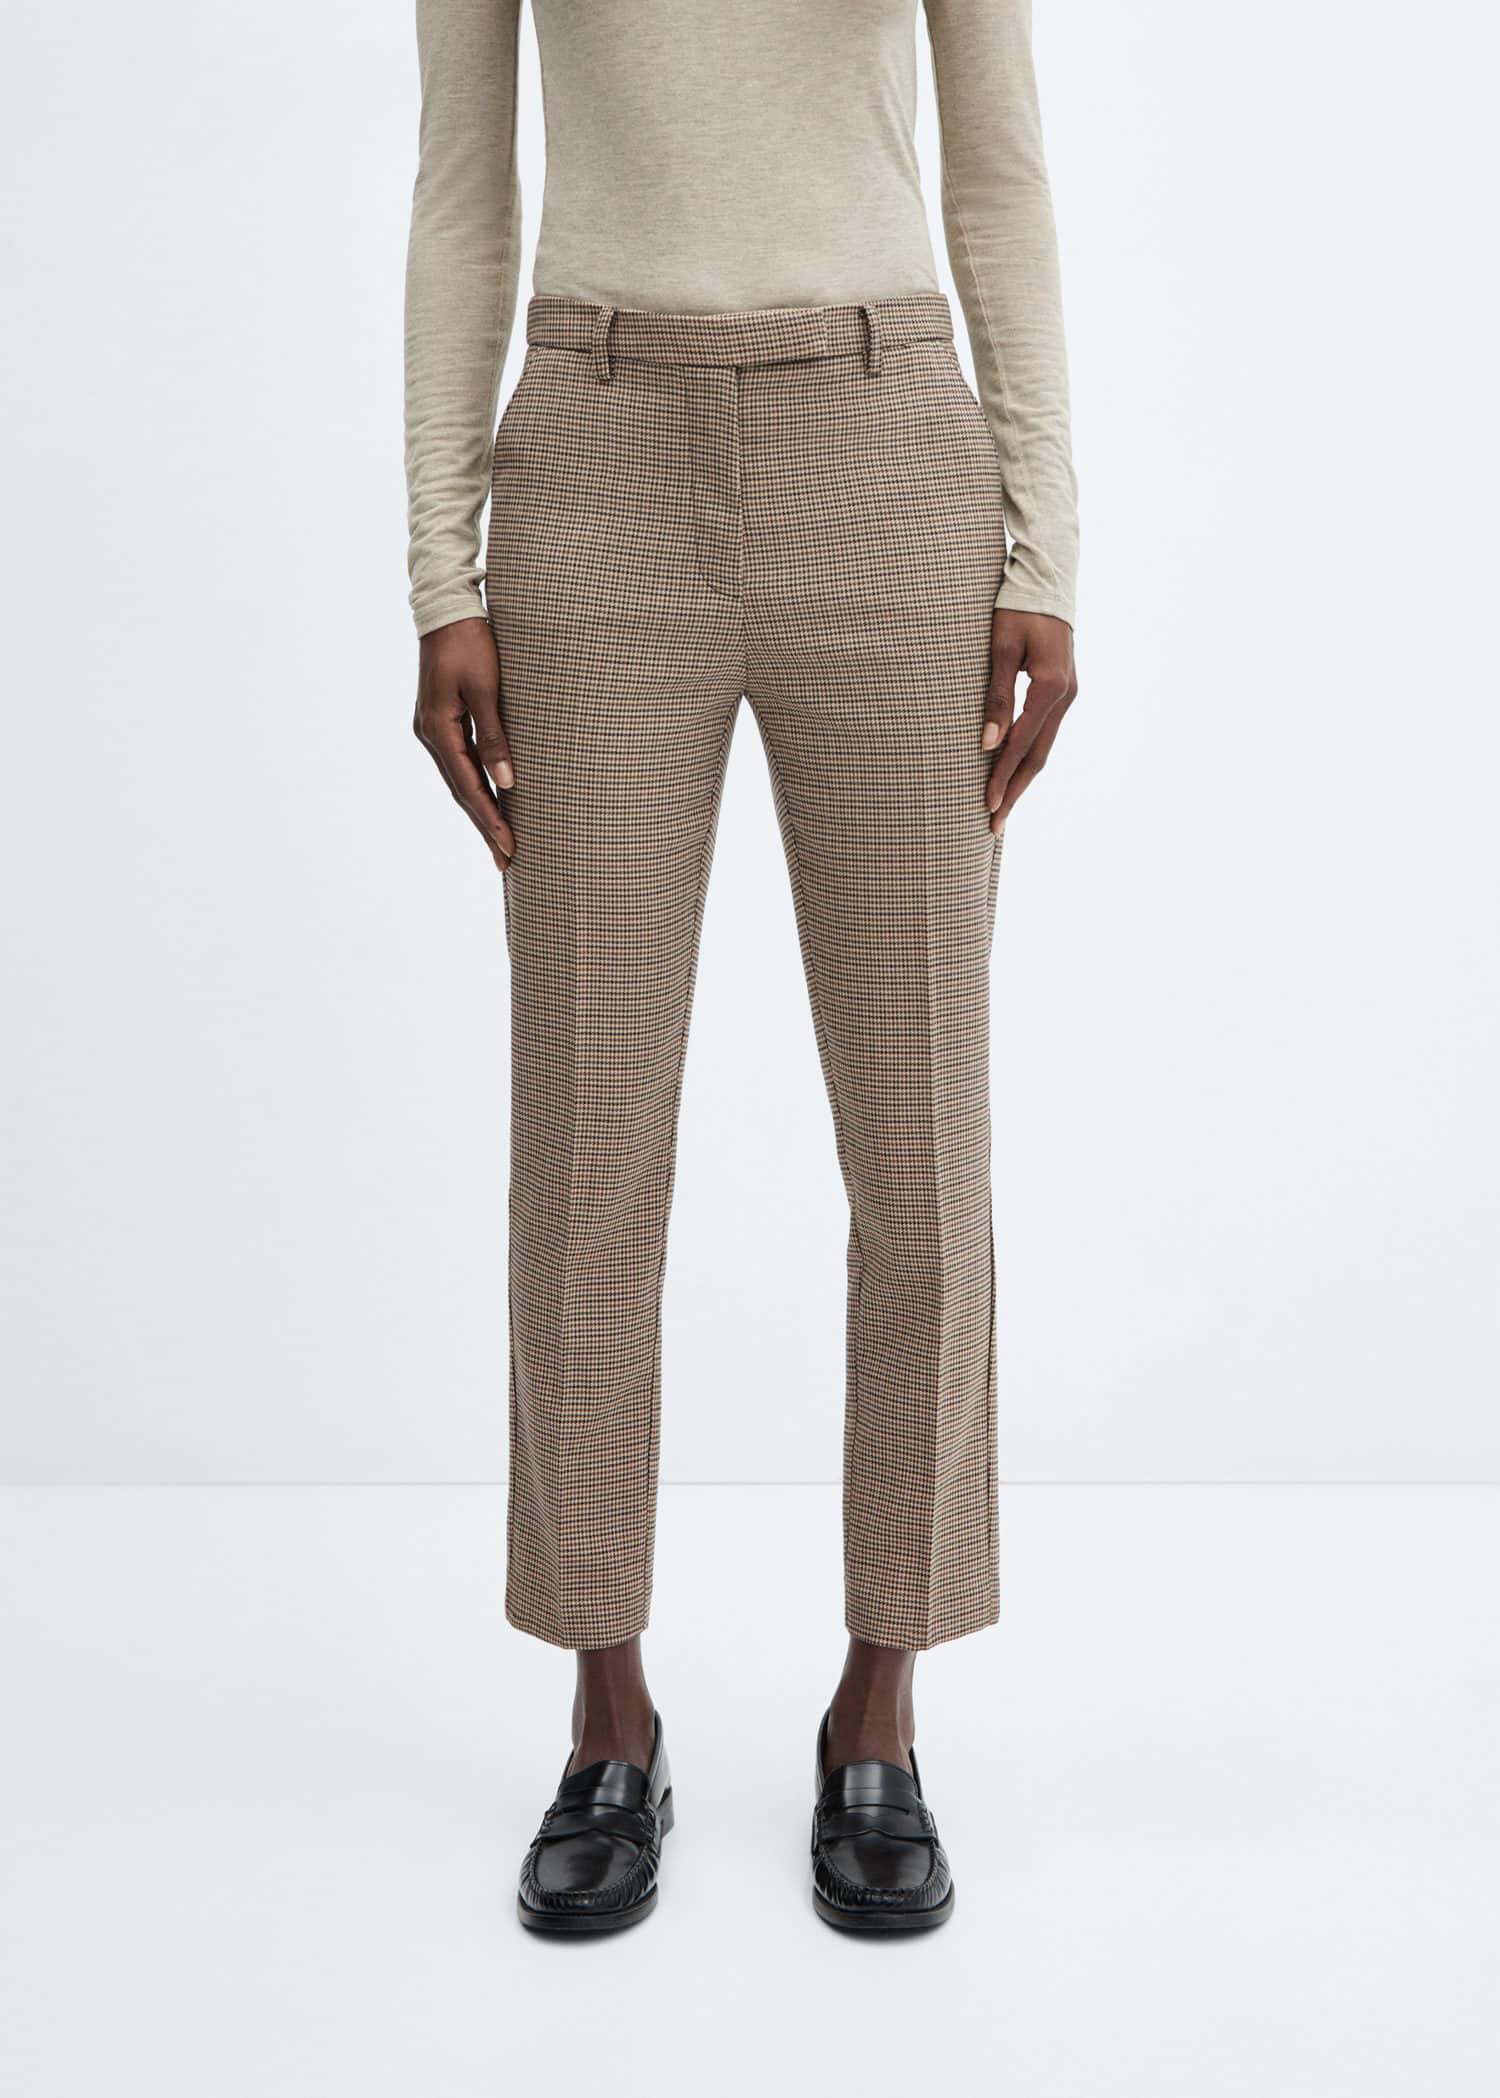 Mango Women's Beige Lucia Front Zip Trousers Size US 6 NWT | eBay